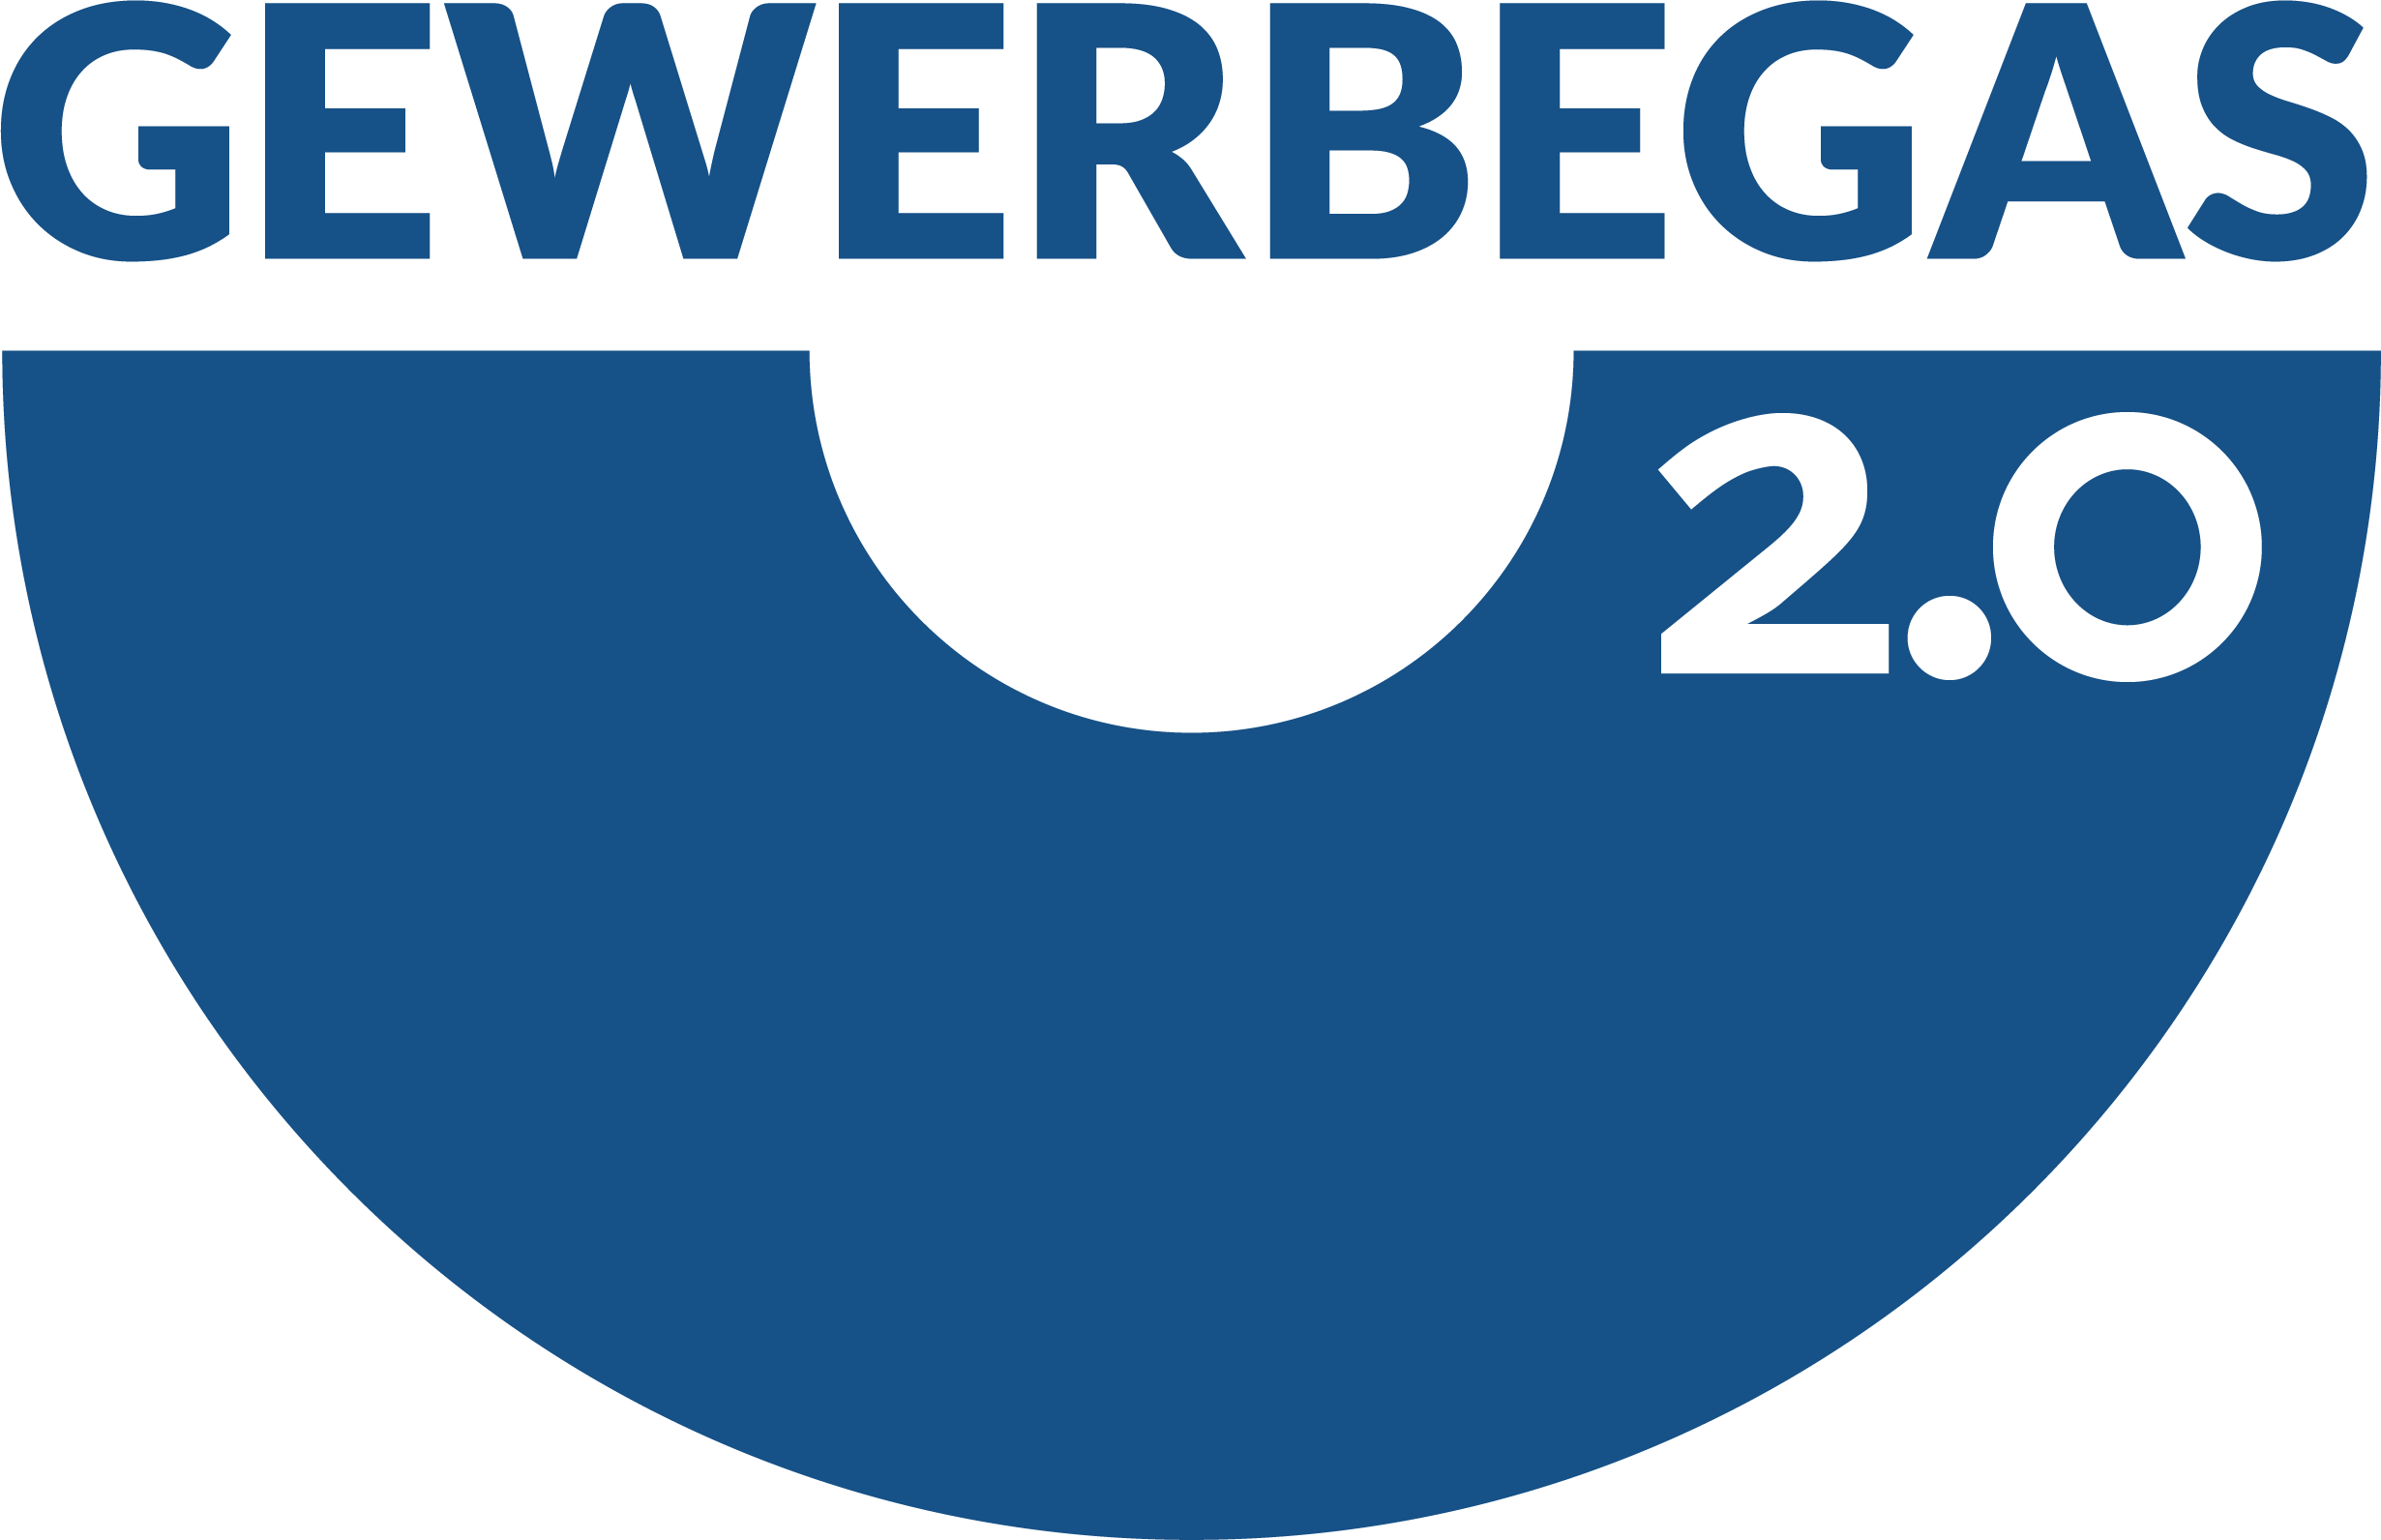 Gewerbegas 20 Logo